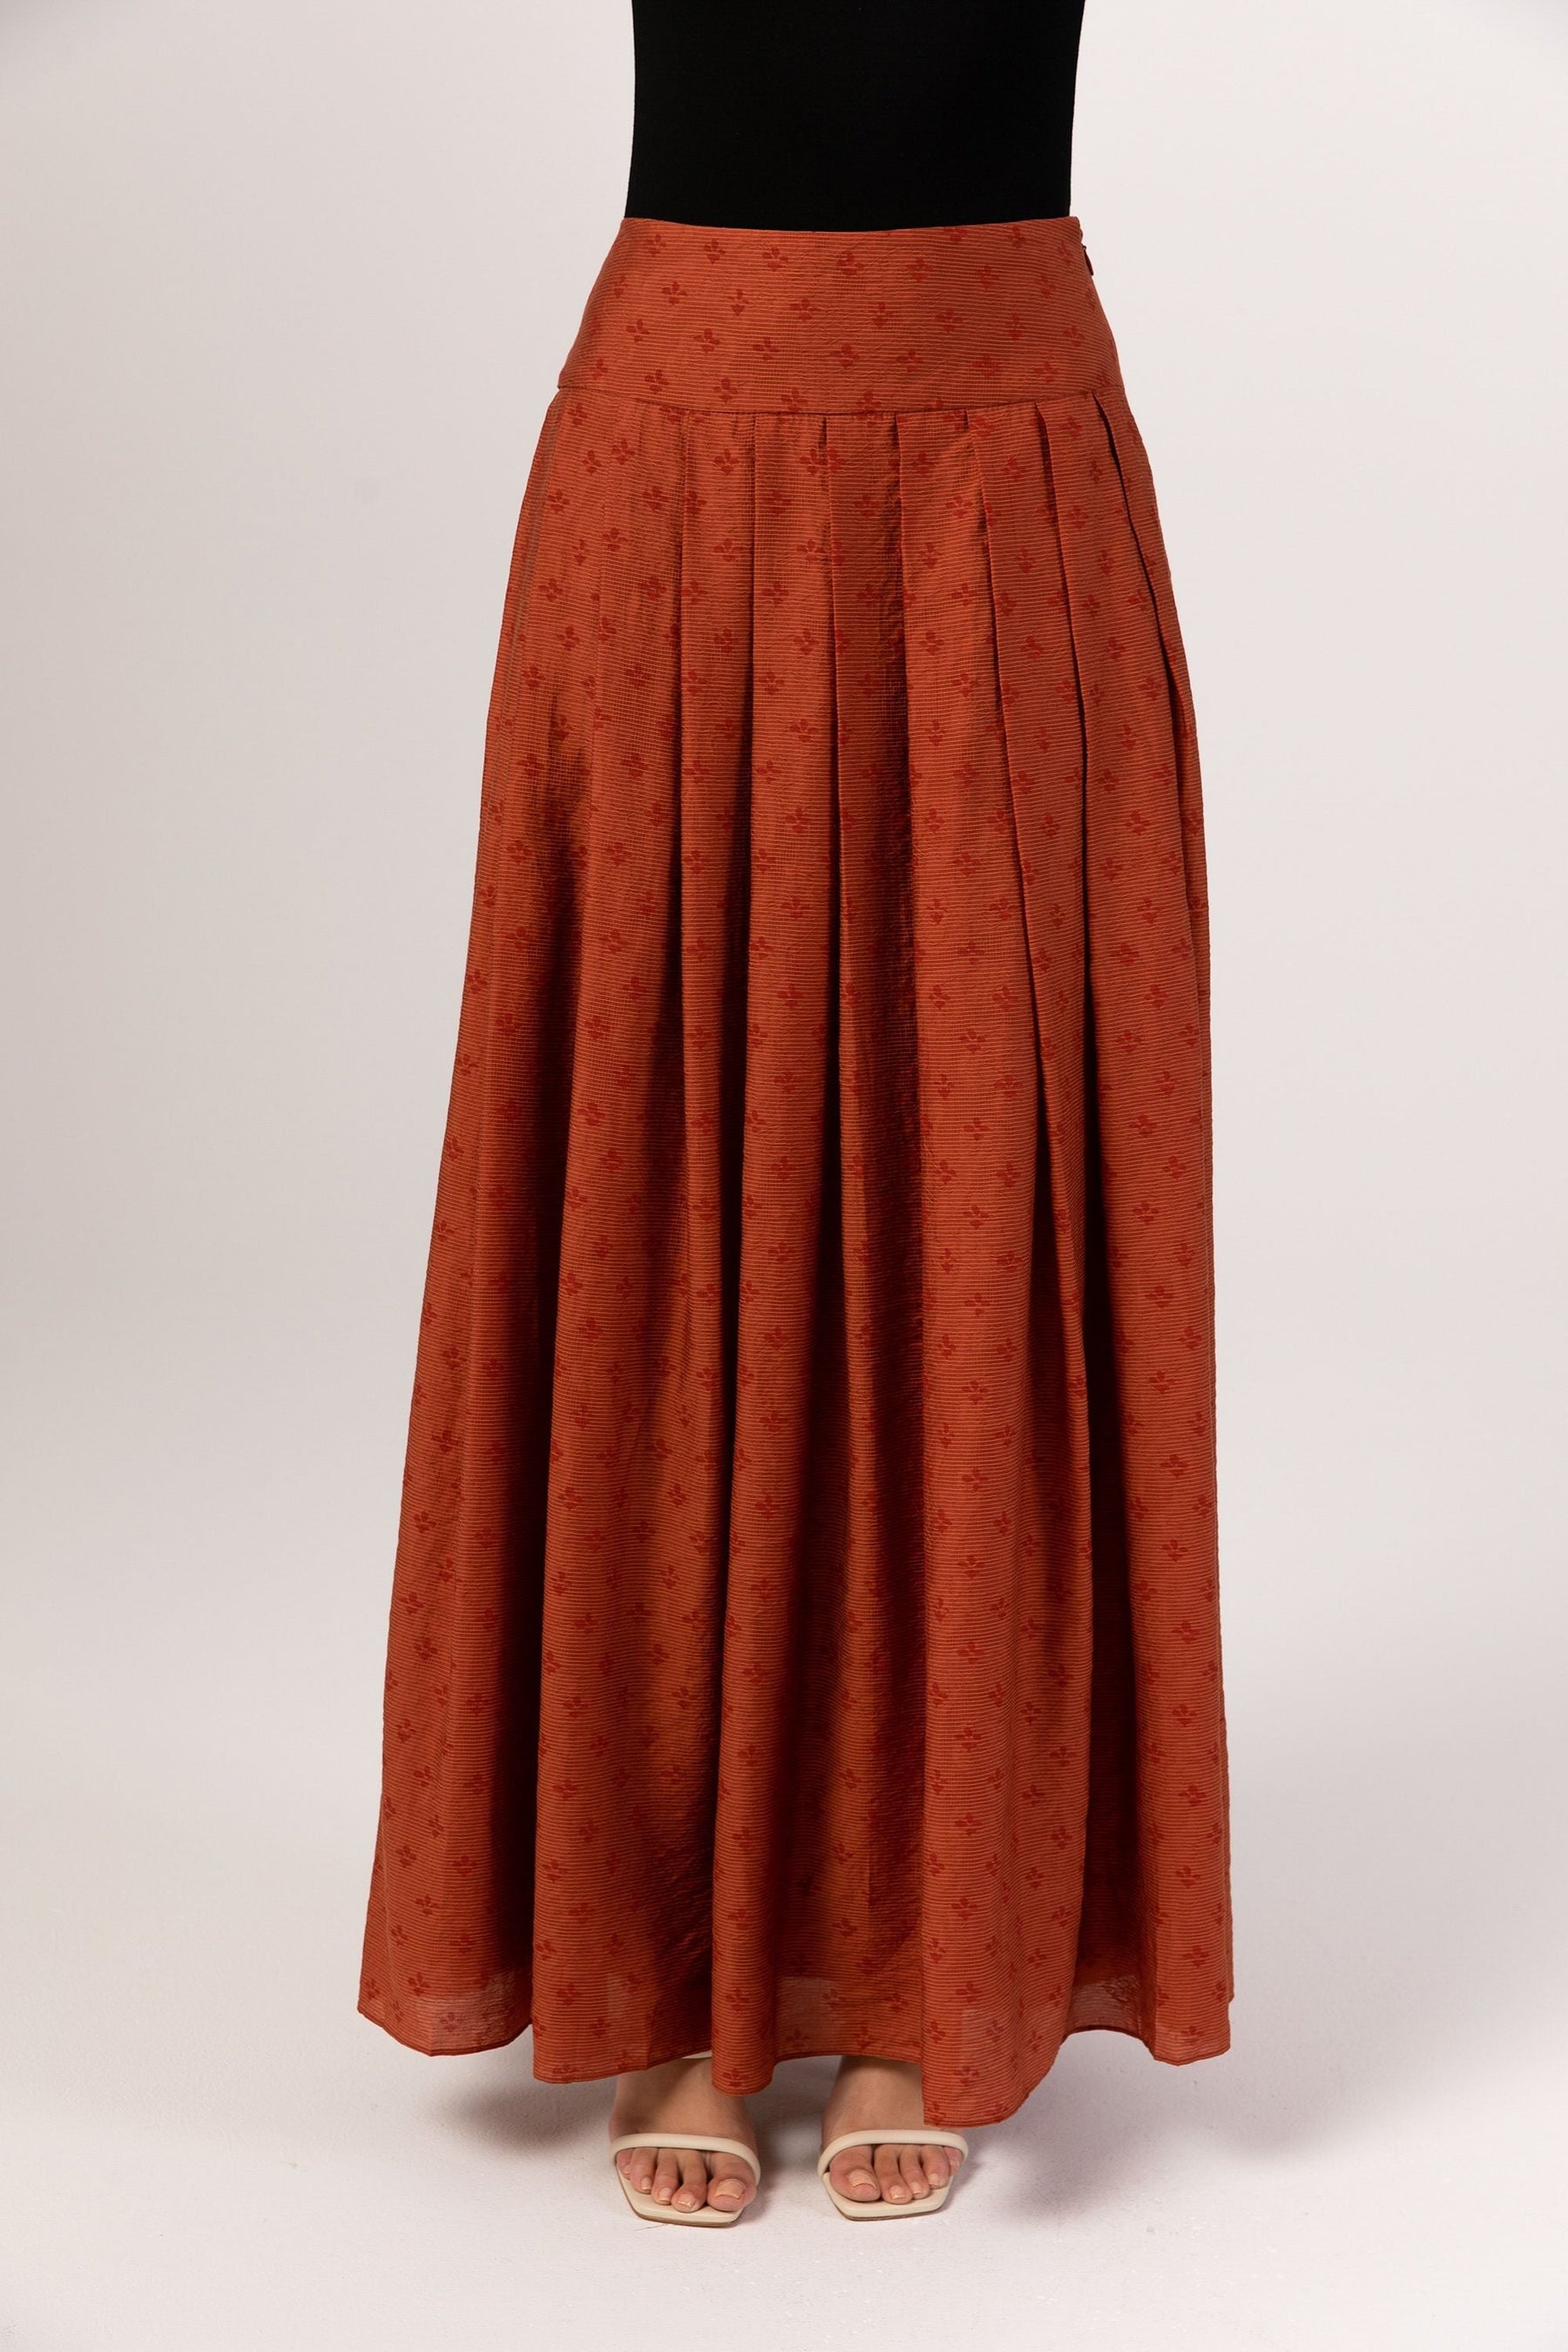 Yasmine Monochrome Floral Pleated Maxi Skirt - Baked Clay Veiled 